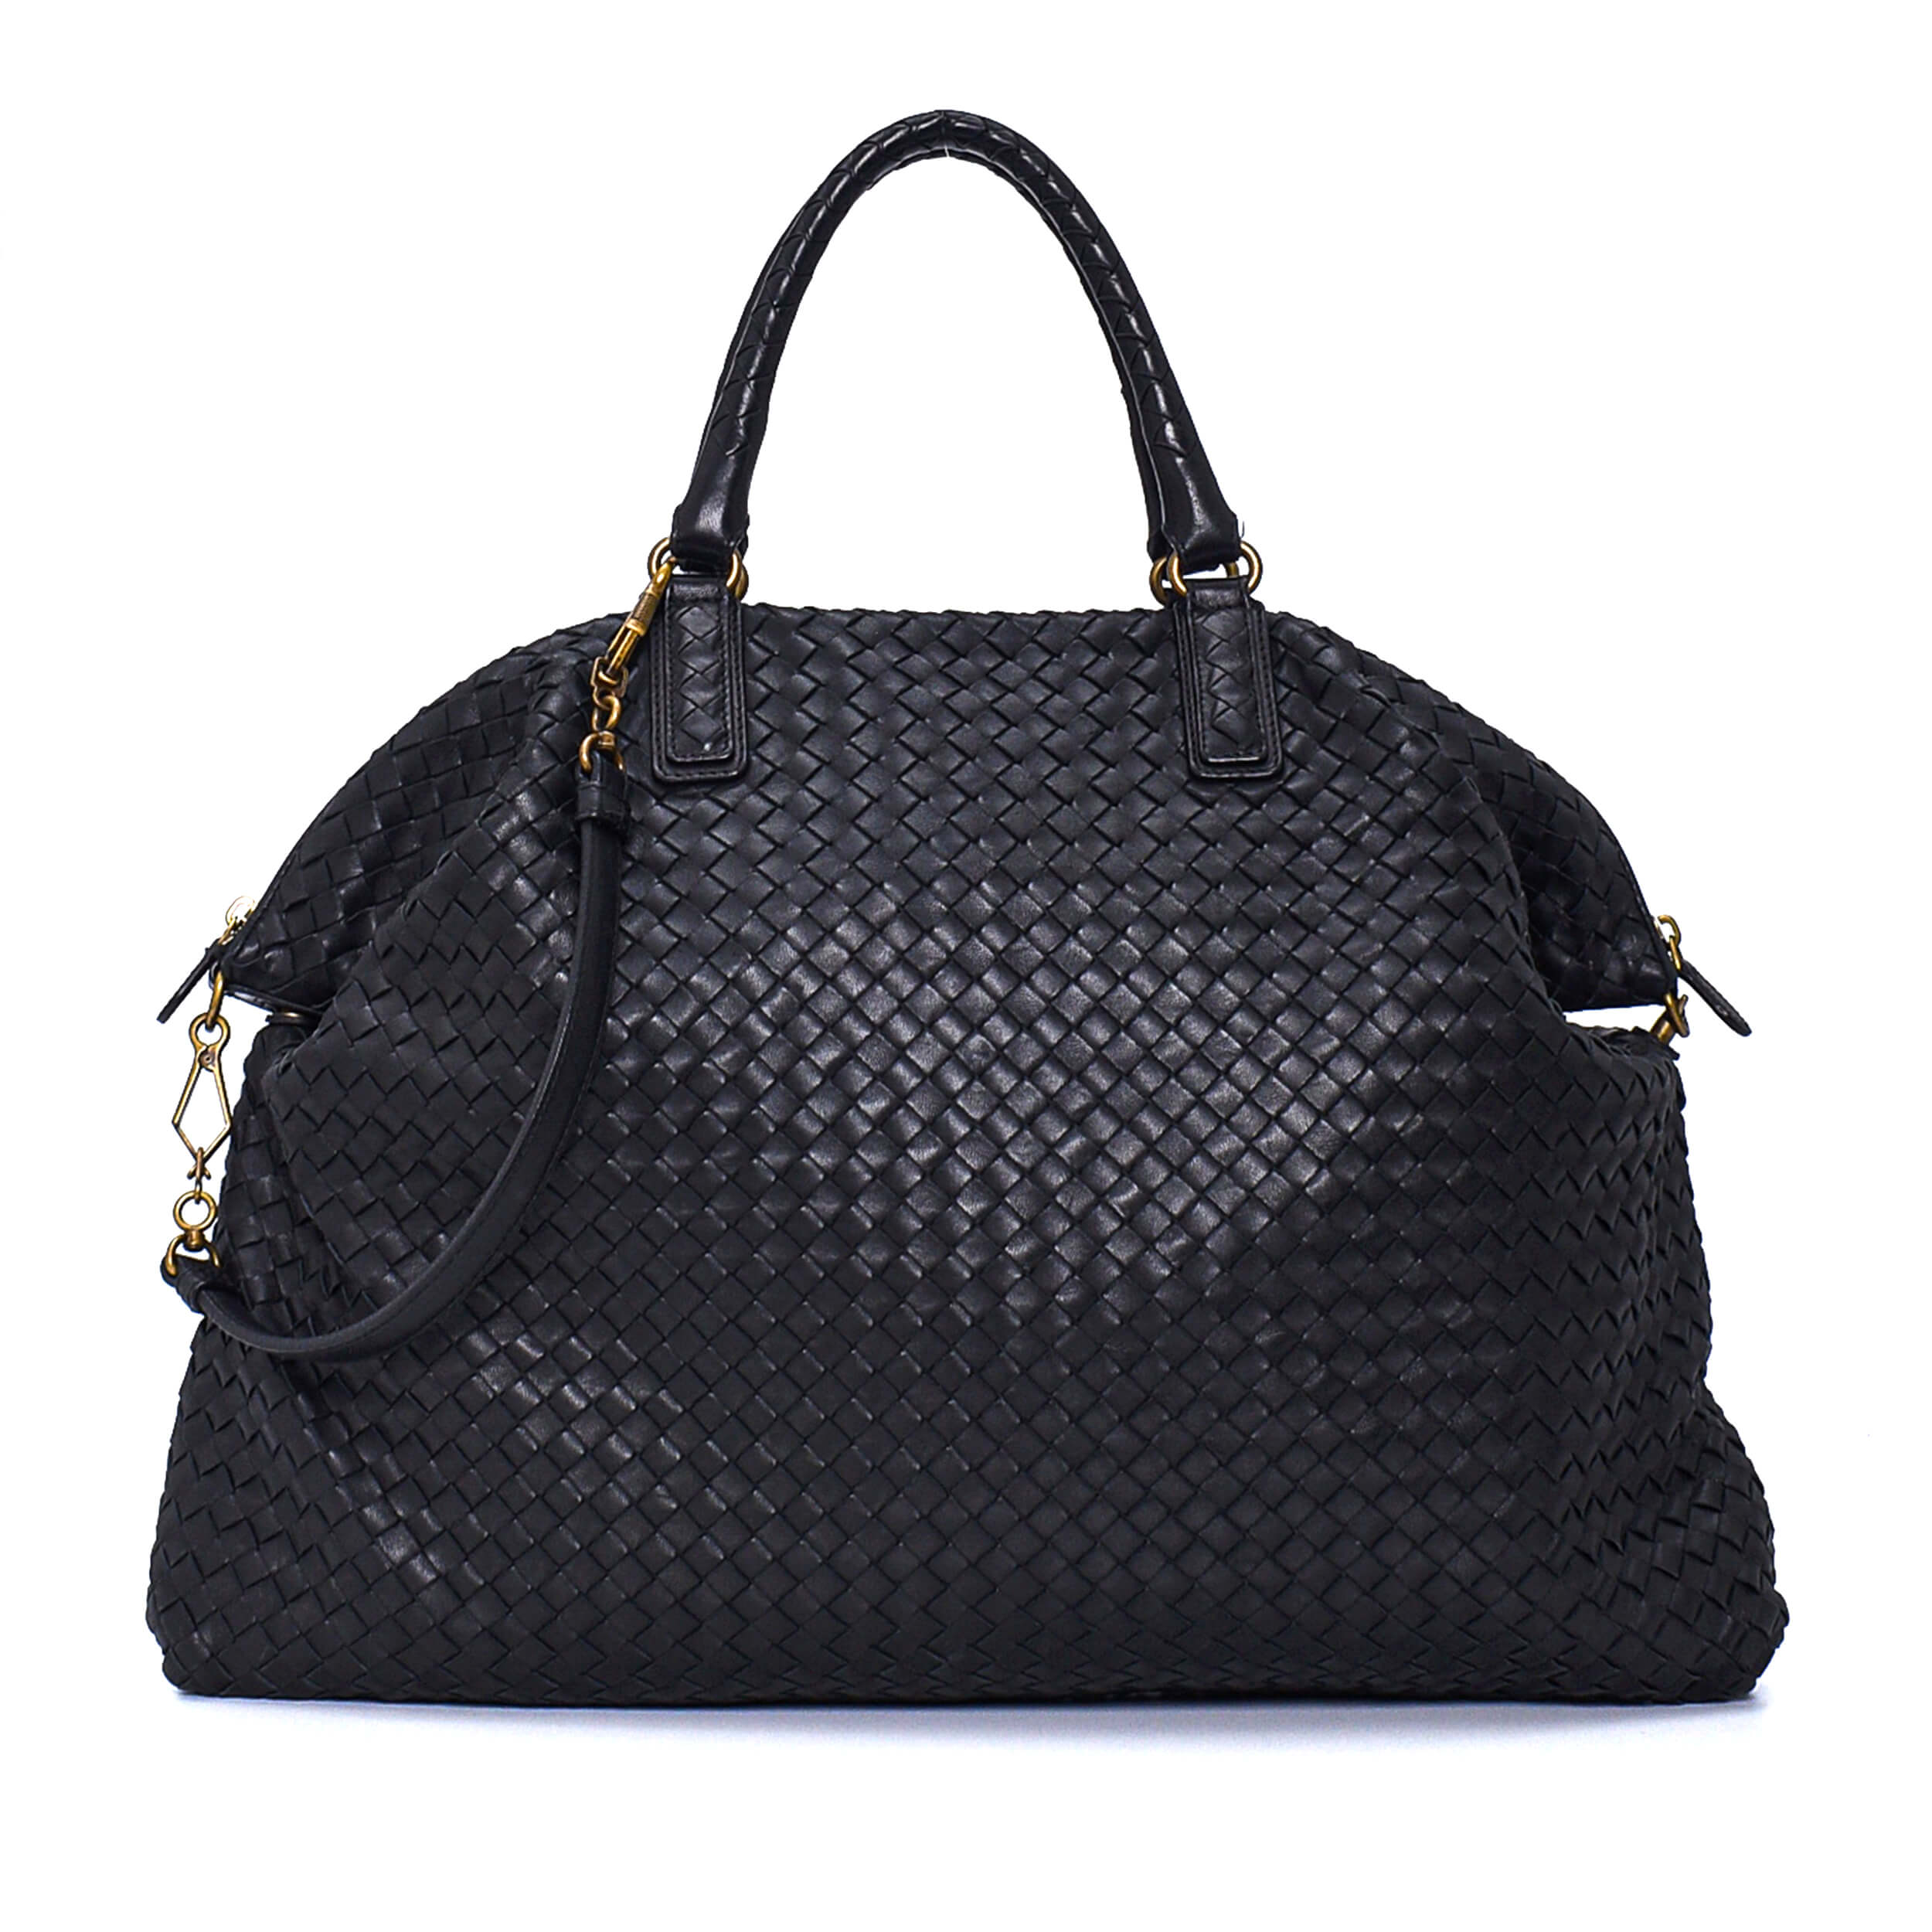 Bottega Veneta - Black Intreccıato Leather Large Hobo Bag